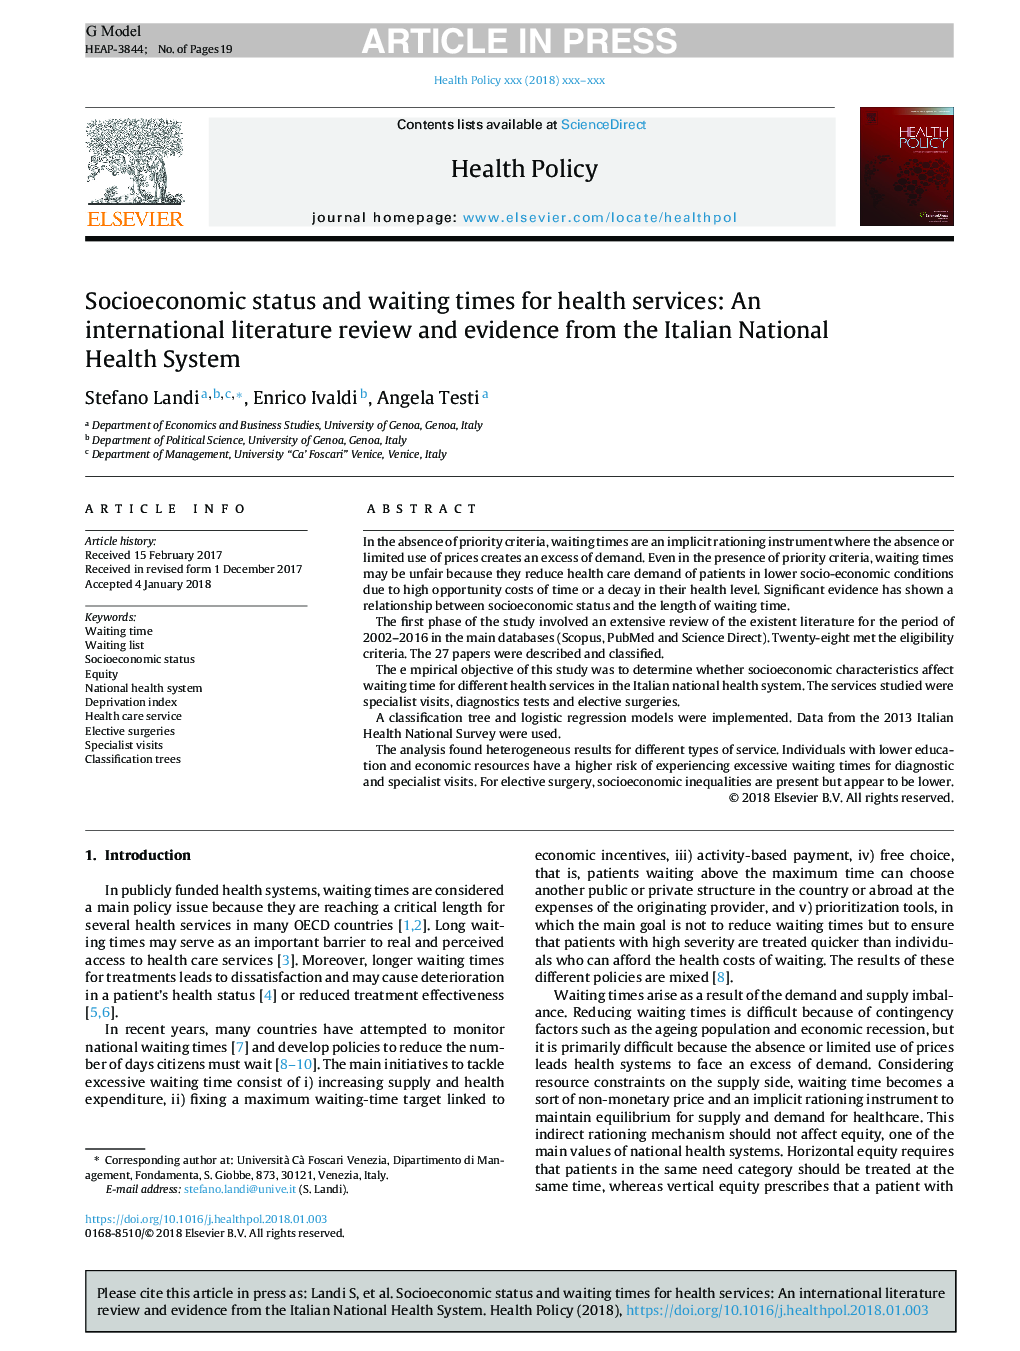 وضعیت اجتماعی و اقتصادی و زمان انتظار برای خدمات بهداشتی: یک بررسی ادبی بین المللی و شواهد از سیستم بهداشت ملی ایتالیا 